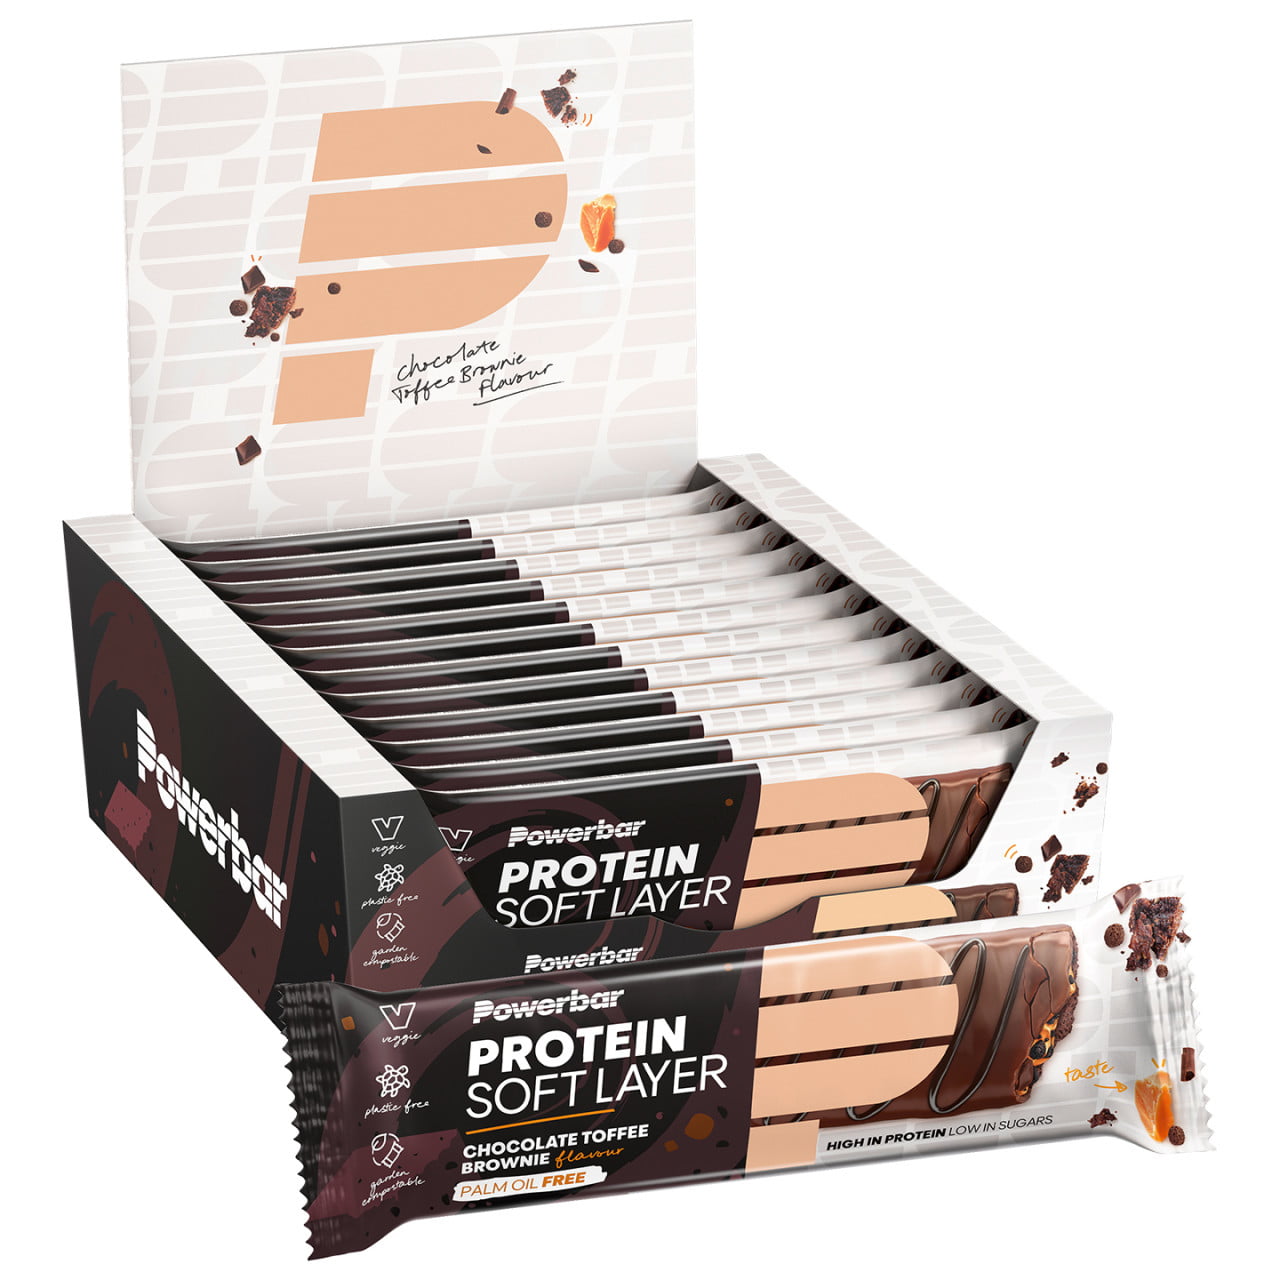 Baton proteinowy Protein Soft Layer Riegel Choco Toffee Brownie 12 szt./kart.